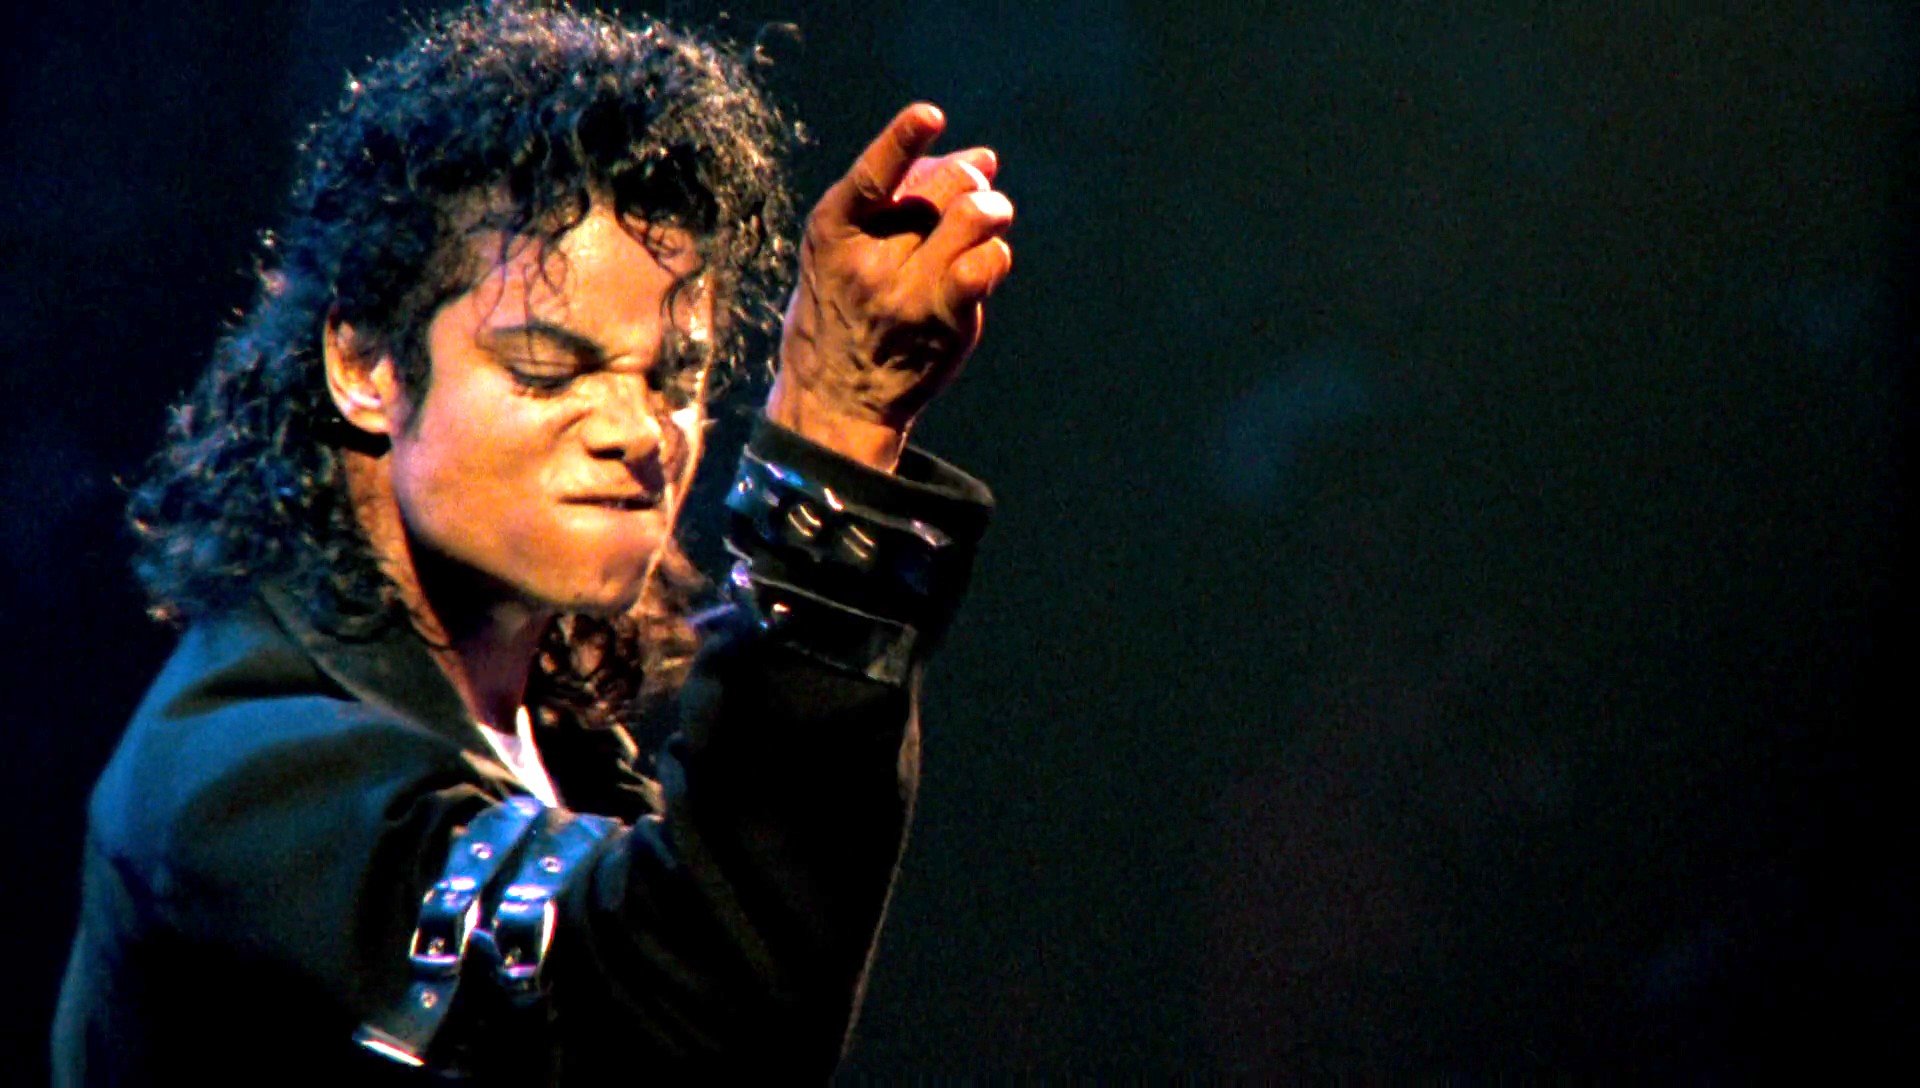 Artistul care mă inspiră: Michael Jackson